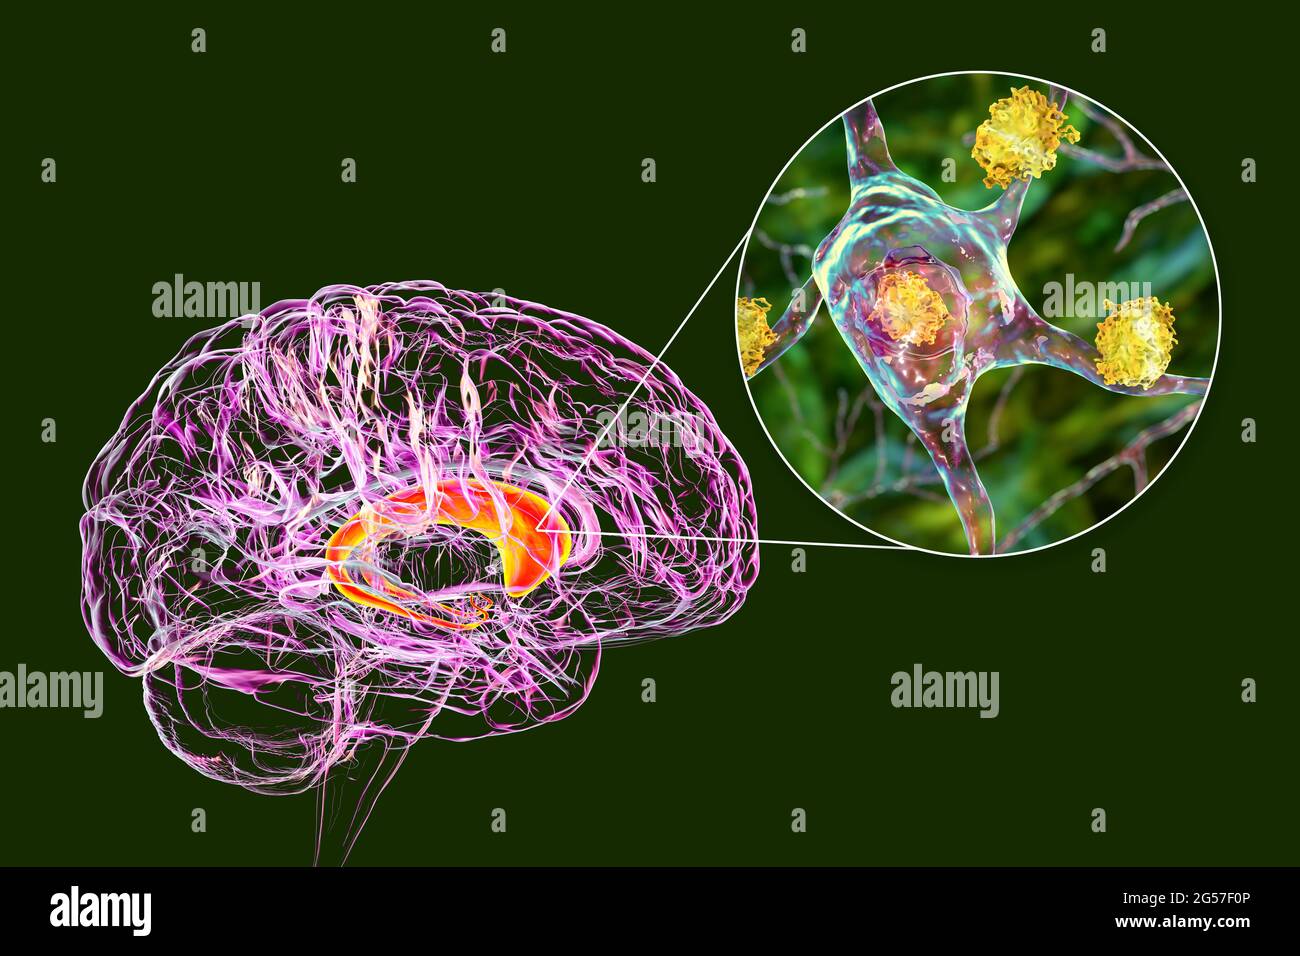 Inclusions neuronales dans la maladie de Huntington, illustration Banque D'Images